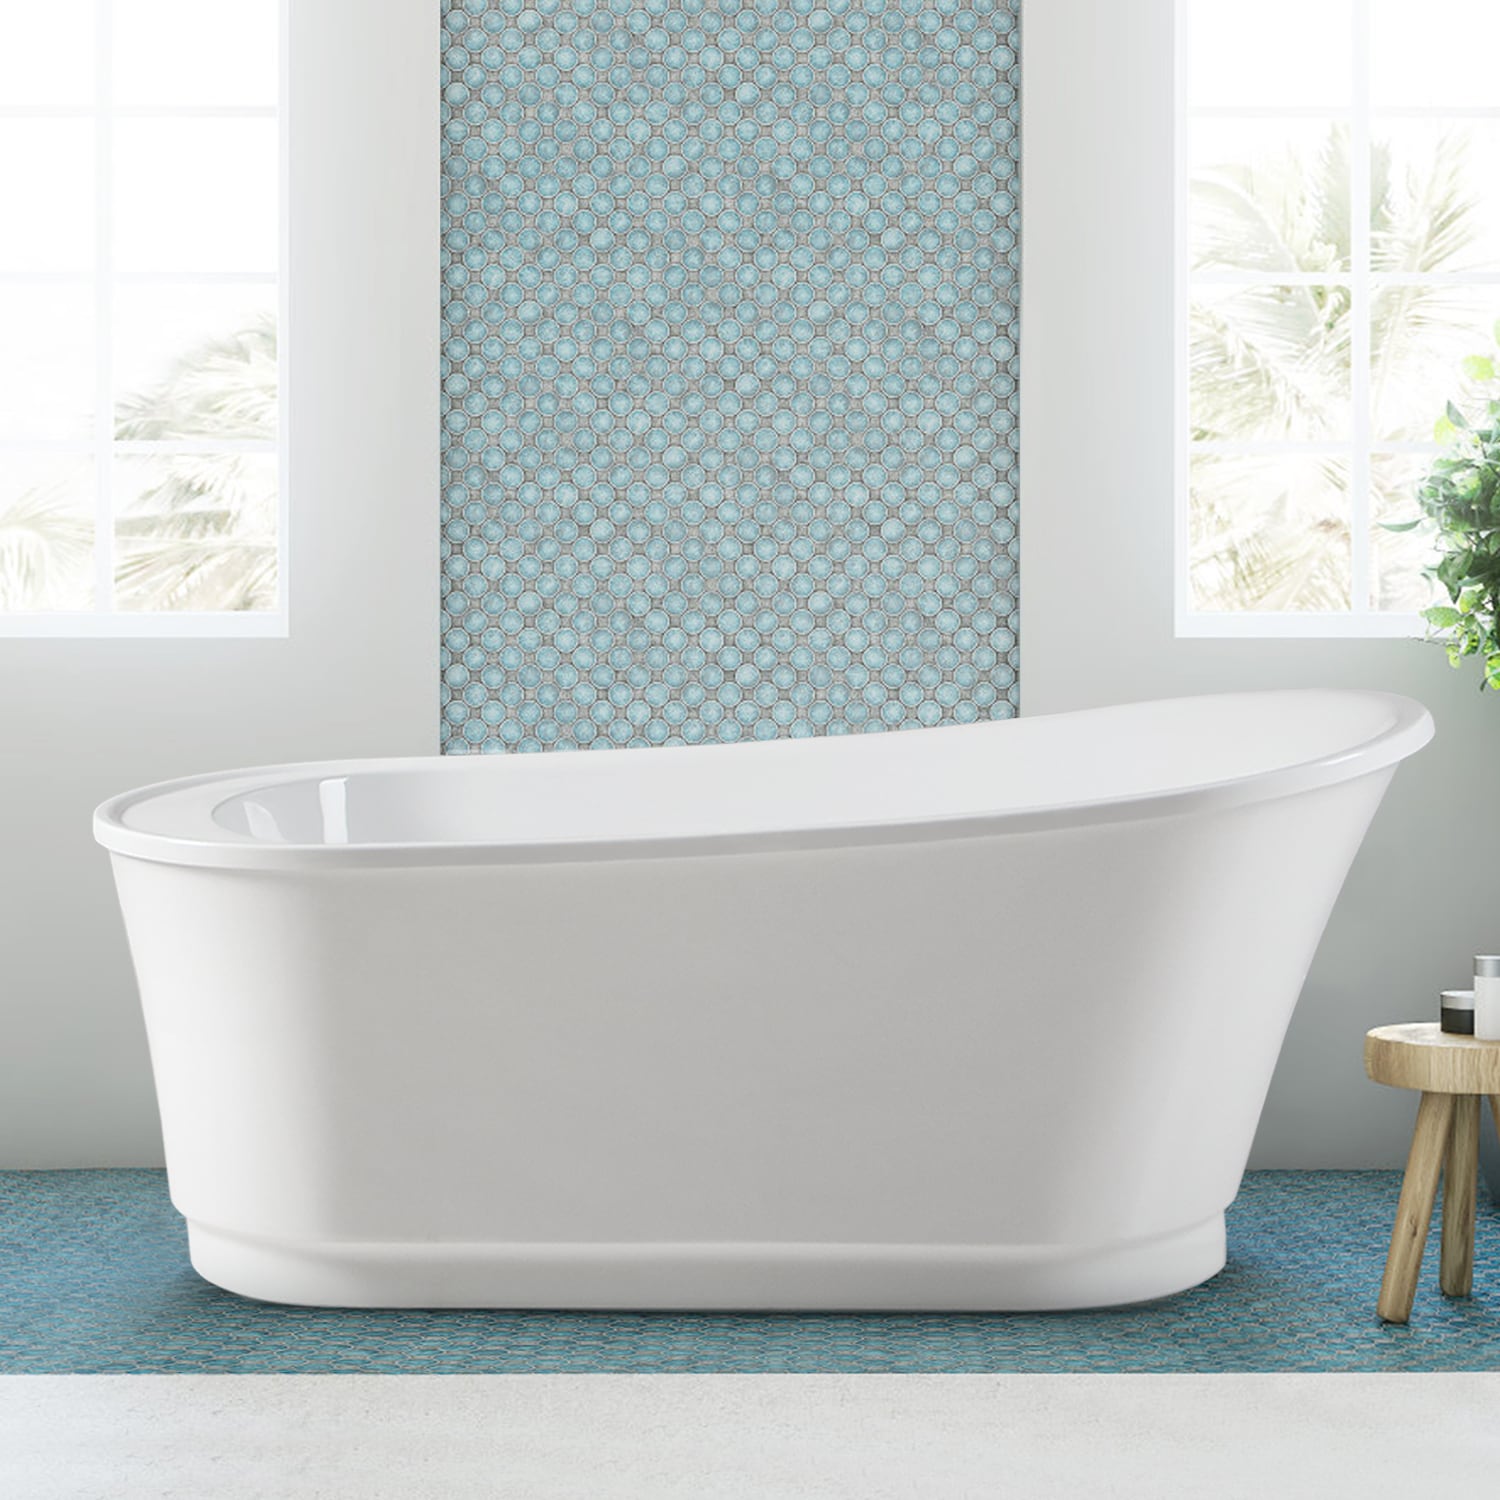 Langkawi 28.7-in x 59.4-in White Acrylic Oval Freestanding Soaking Bathtub with Drain (Reversible Drain) | -02568T-1500-BN - FerdY FERDY-02568T-1500-BN